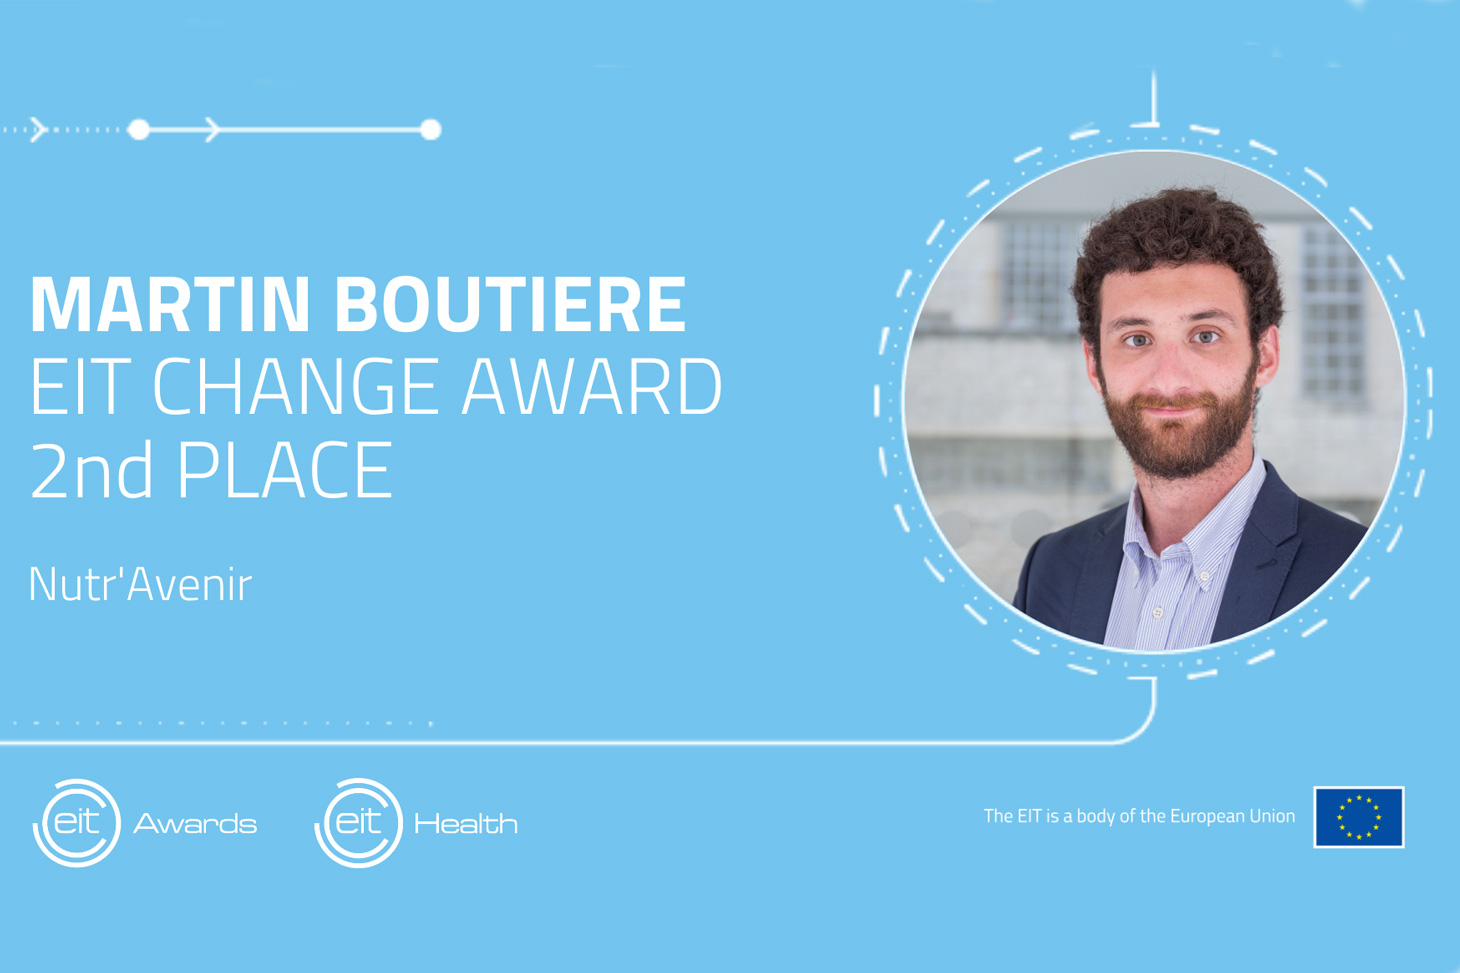 Doctorant au sein du Laboratoire de bioénergétique fondamentale et appliquée (LBFA - Inserm, UGA), Martin Boutière est le premier étudiant français à être distingué dans la catégorie 